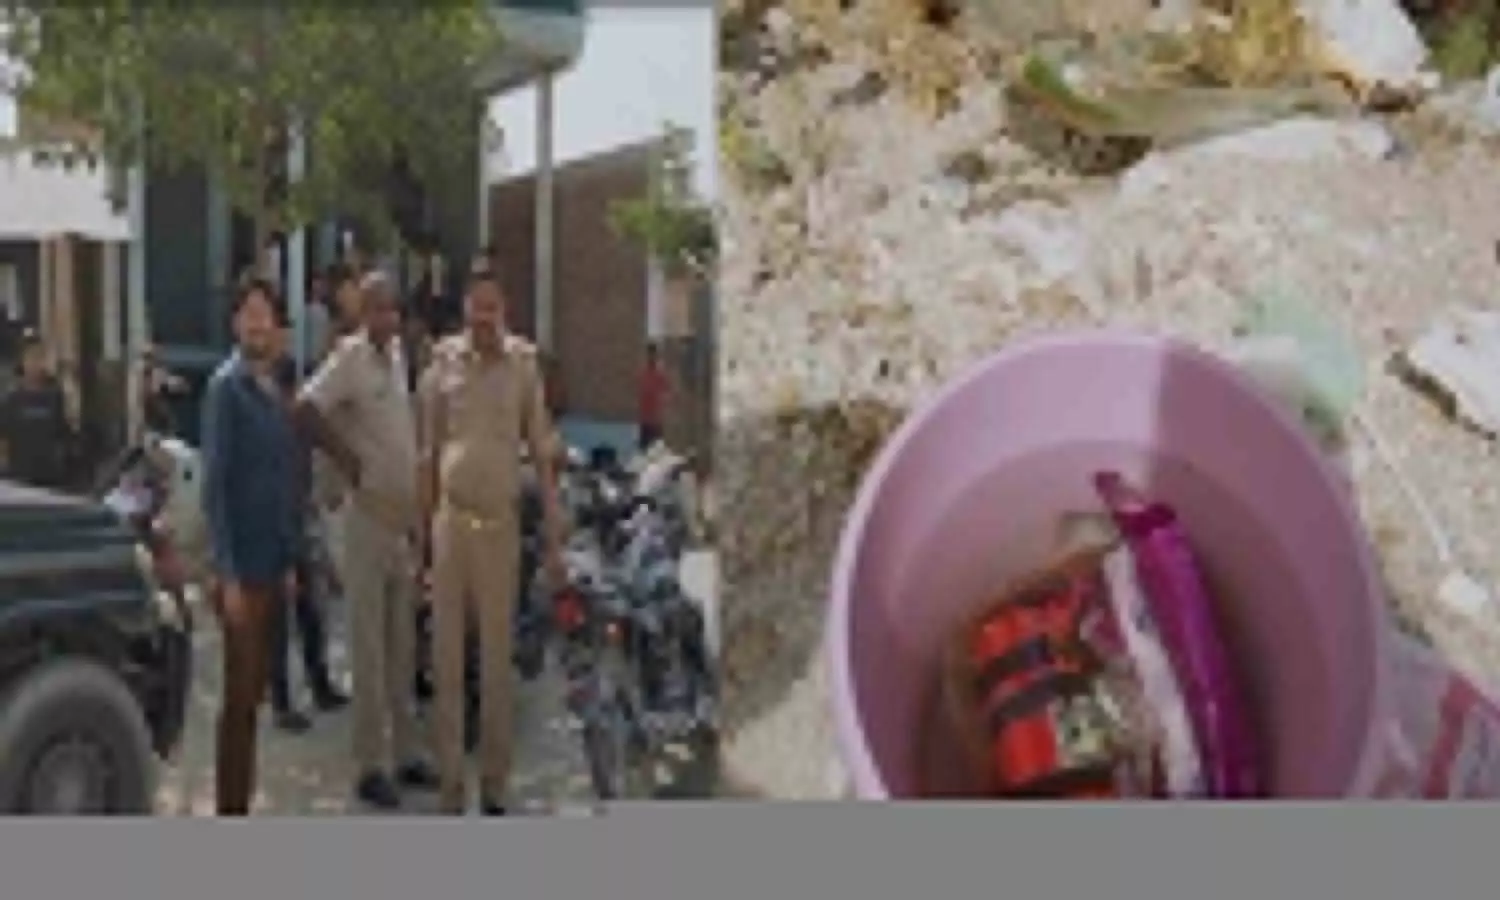 Fatehpur News: शहर में टाइम बम जैसा उपकरण मिलने से मची सनसनी, पुलिस ने शुरू की जांच